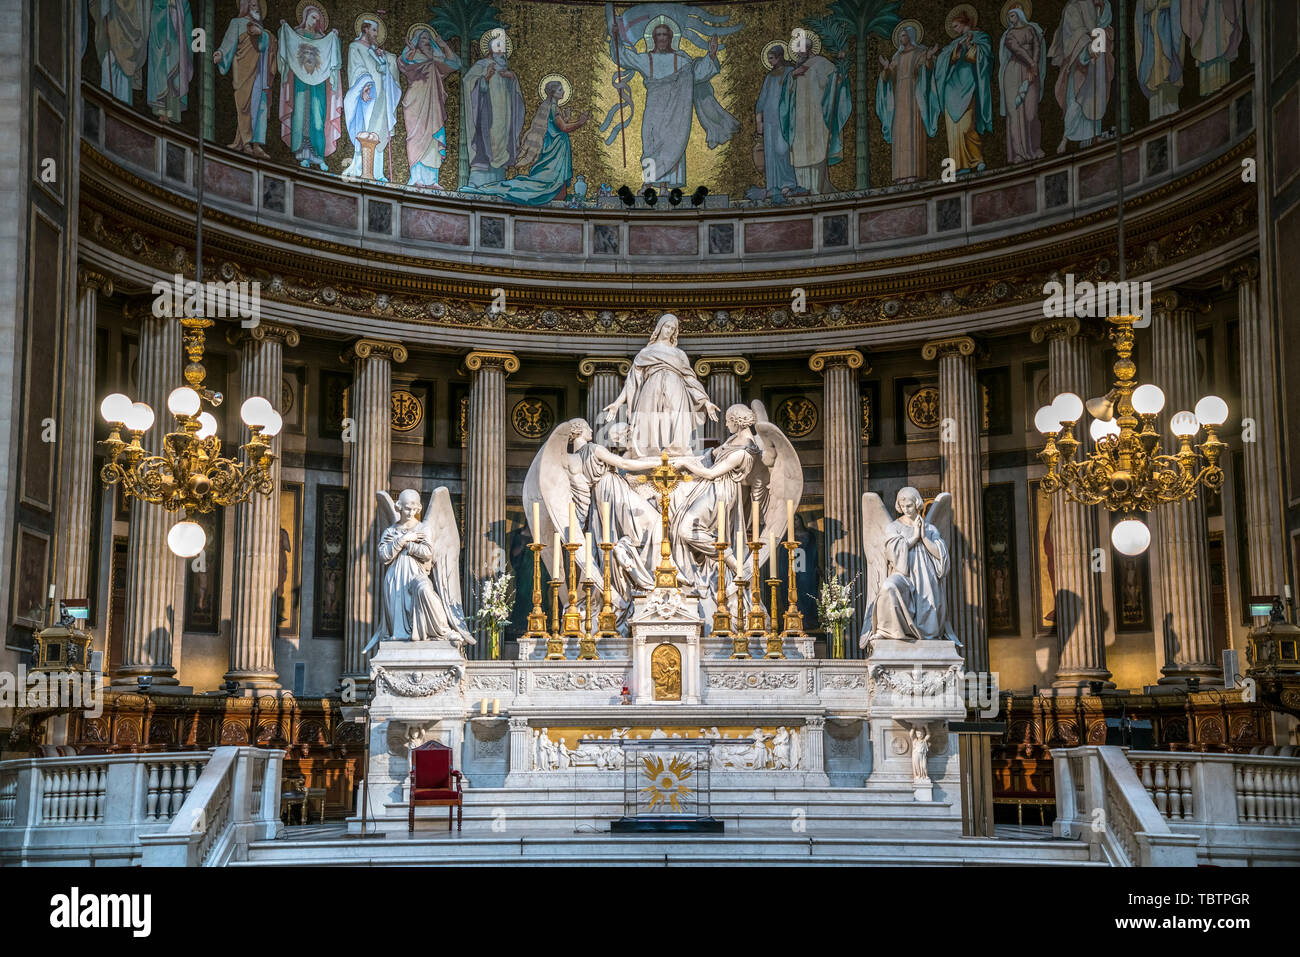 Skulpturengruppe mit Maria Magdalena am Altar der Pfarrkirche La Madeleine  Sainte-Marie-Madeleine, Paris, Frankreich  |  altar sculpture group with M Stock Photo